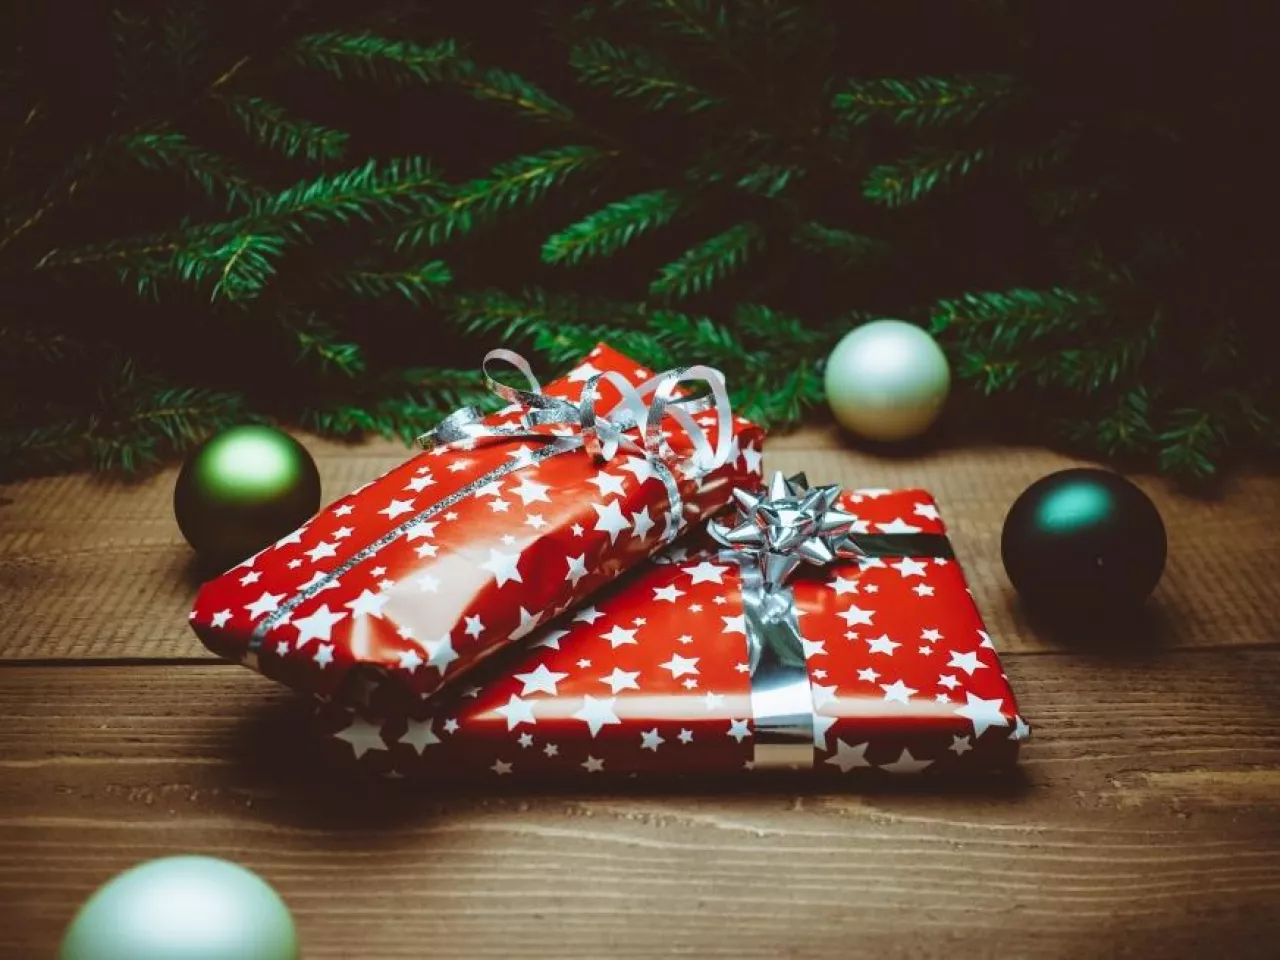 Polacy z roku na rok wydają na świąteczne prezenty coraz więcej pieniędzy (fot. Pixabay/CC0)